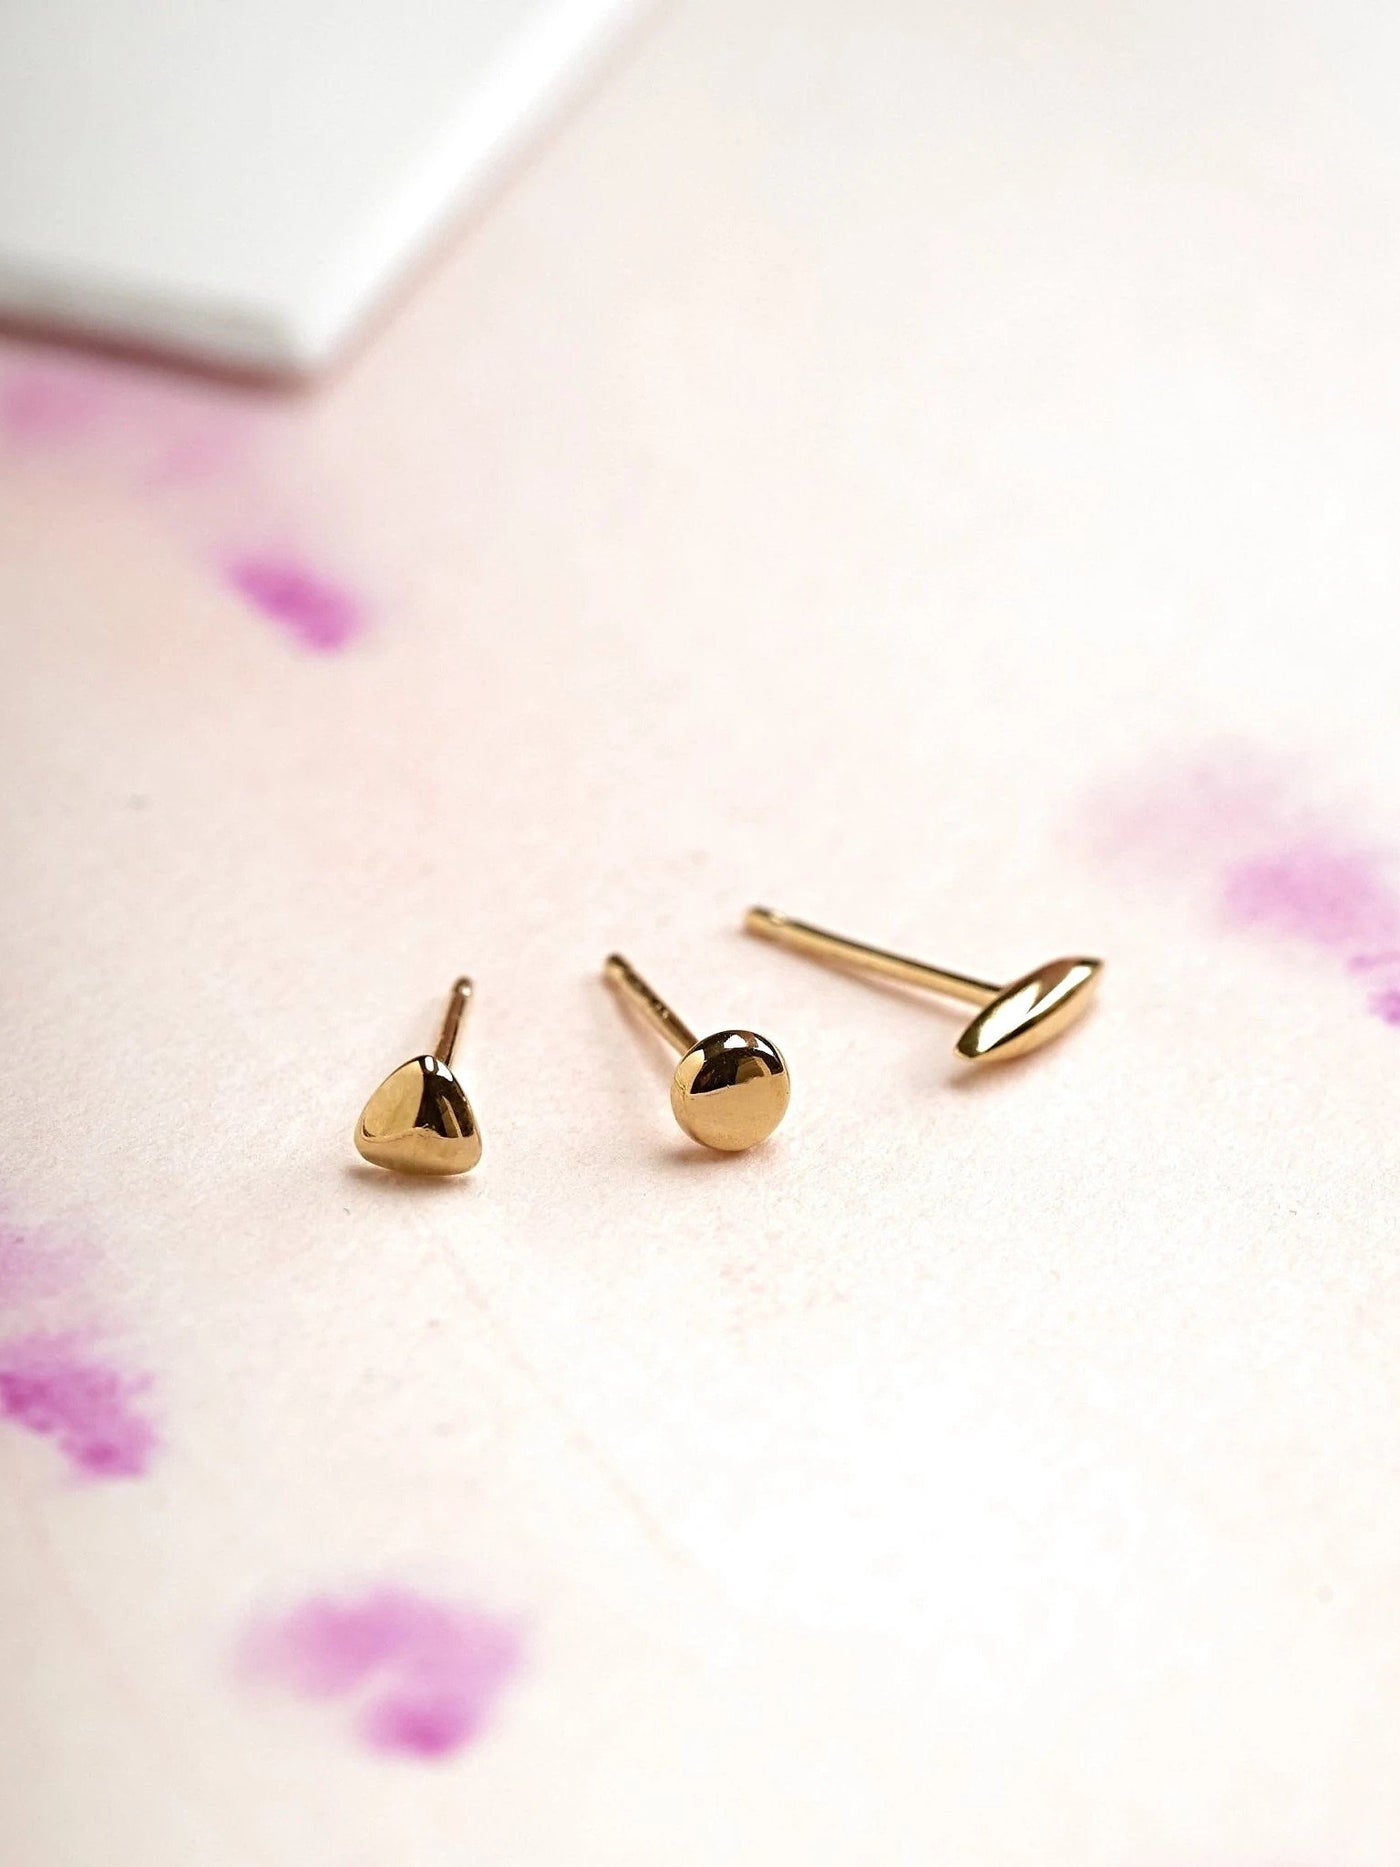 Nile Stud Earrings - 24K Gold PlatedBackUpItemsButterfly EarringsLunai Jewelry